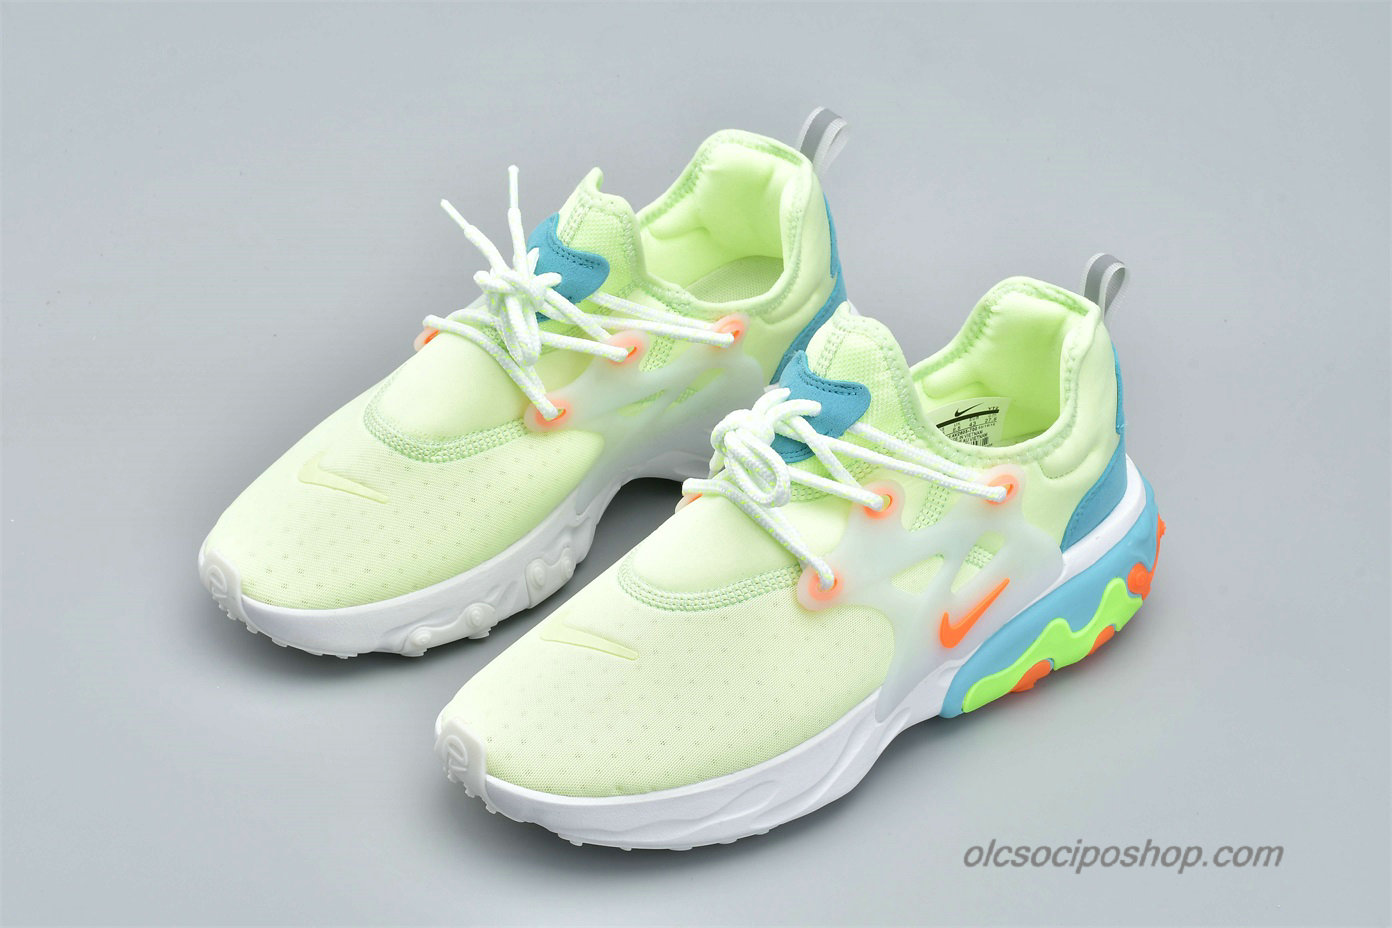 Nike Presto React Zöld/Világoskék/Narancs Cipők (AV2605-700)